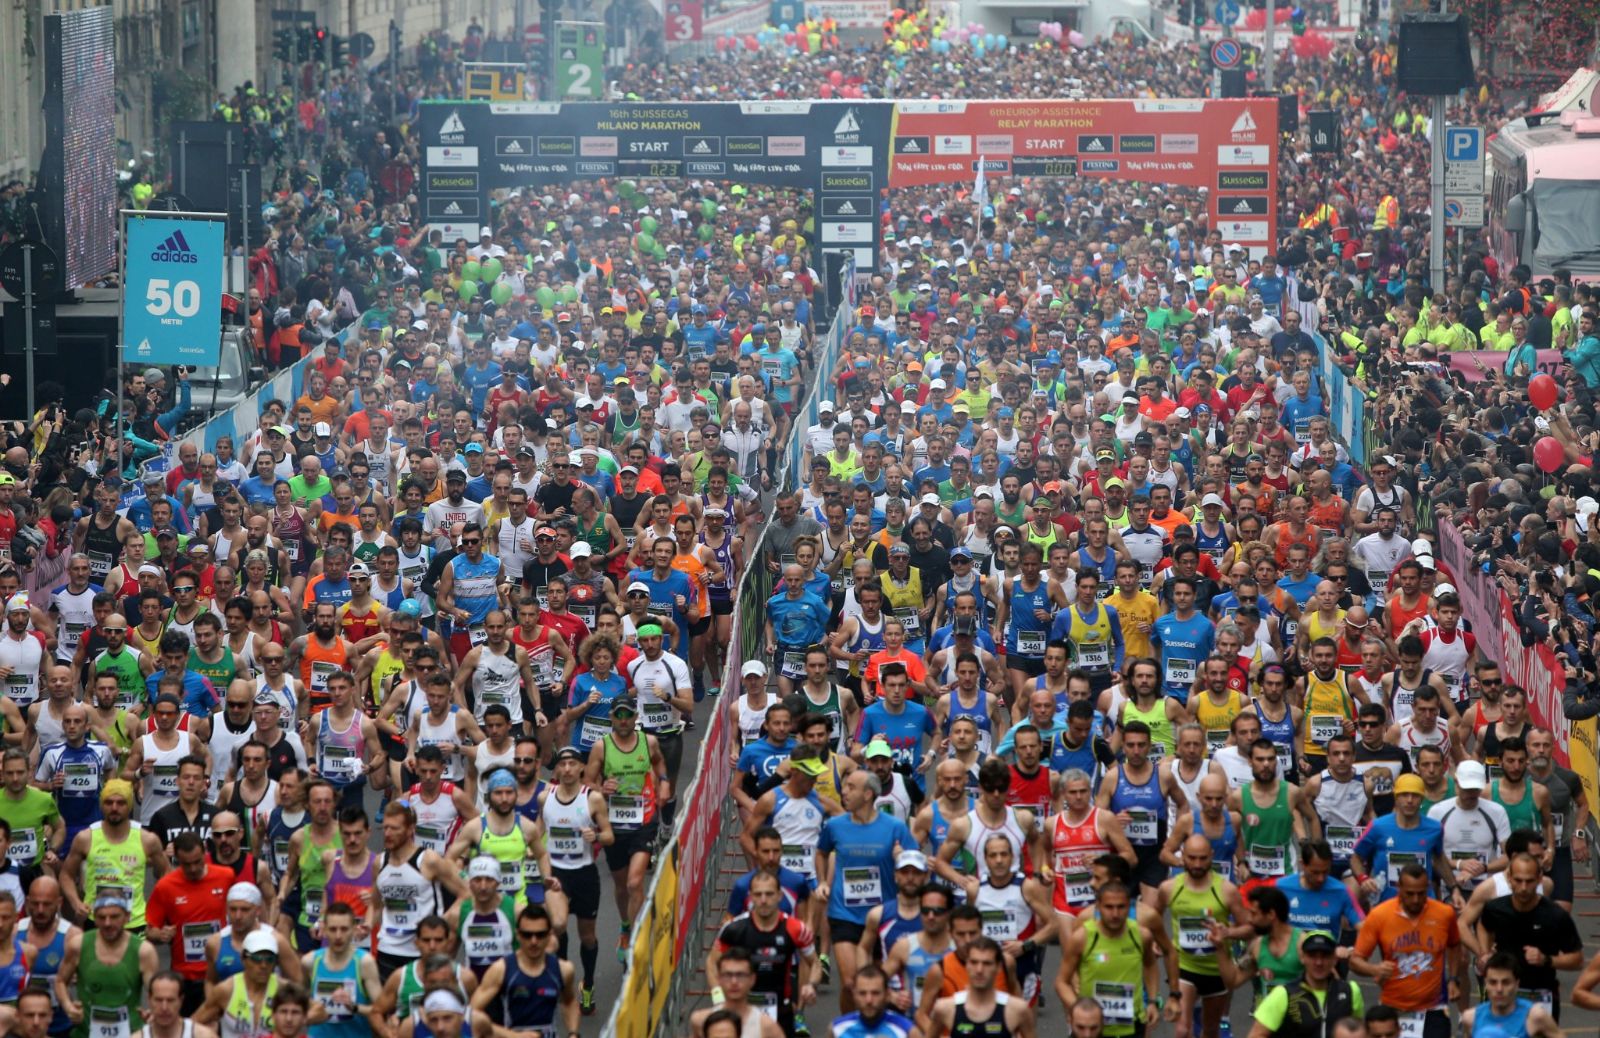 Milano Marathon: al via la 17esima edizione - Tutte le informazioni